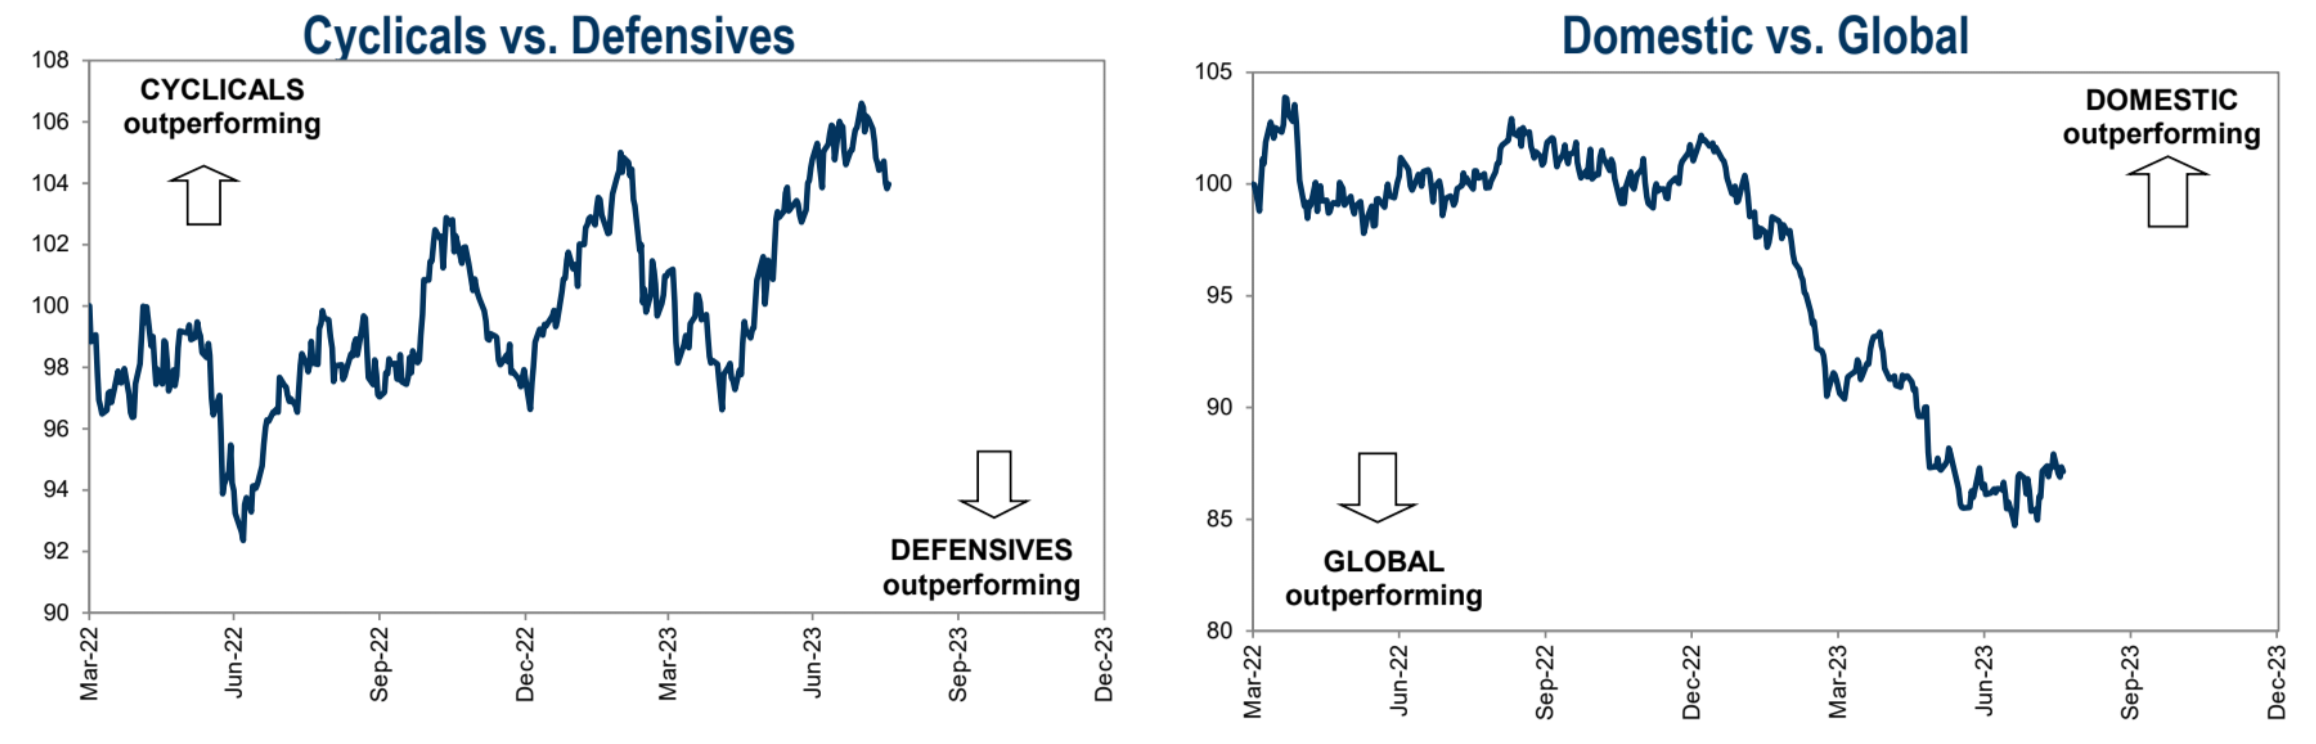 Cyclicals vs. Defensives Stocks Goldman